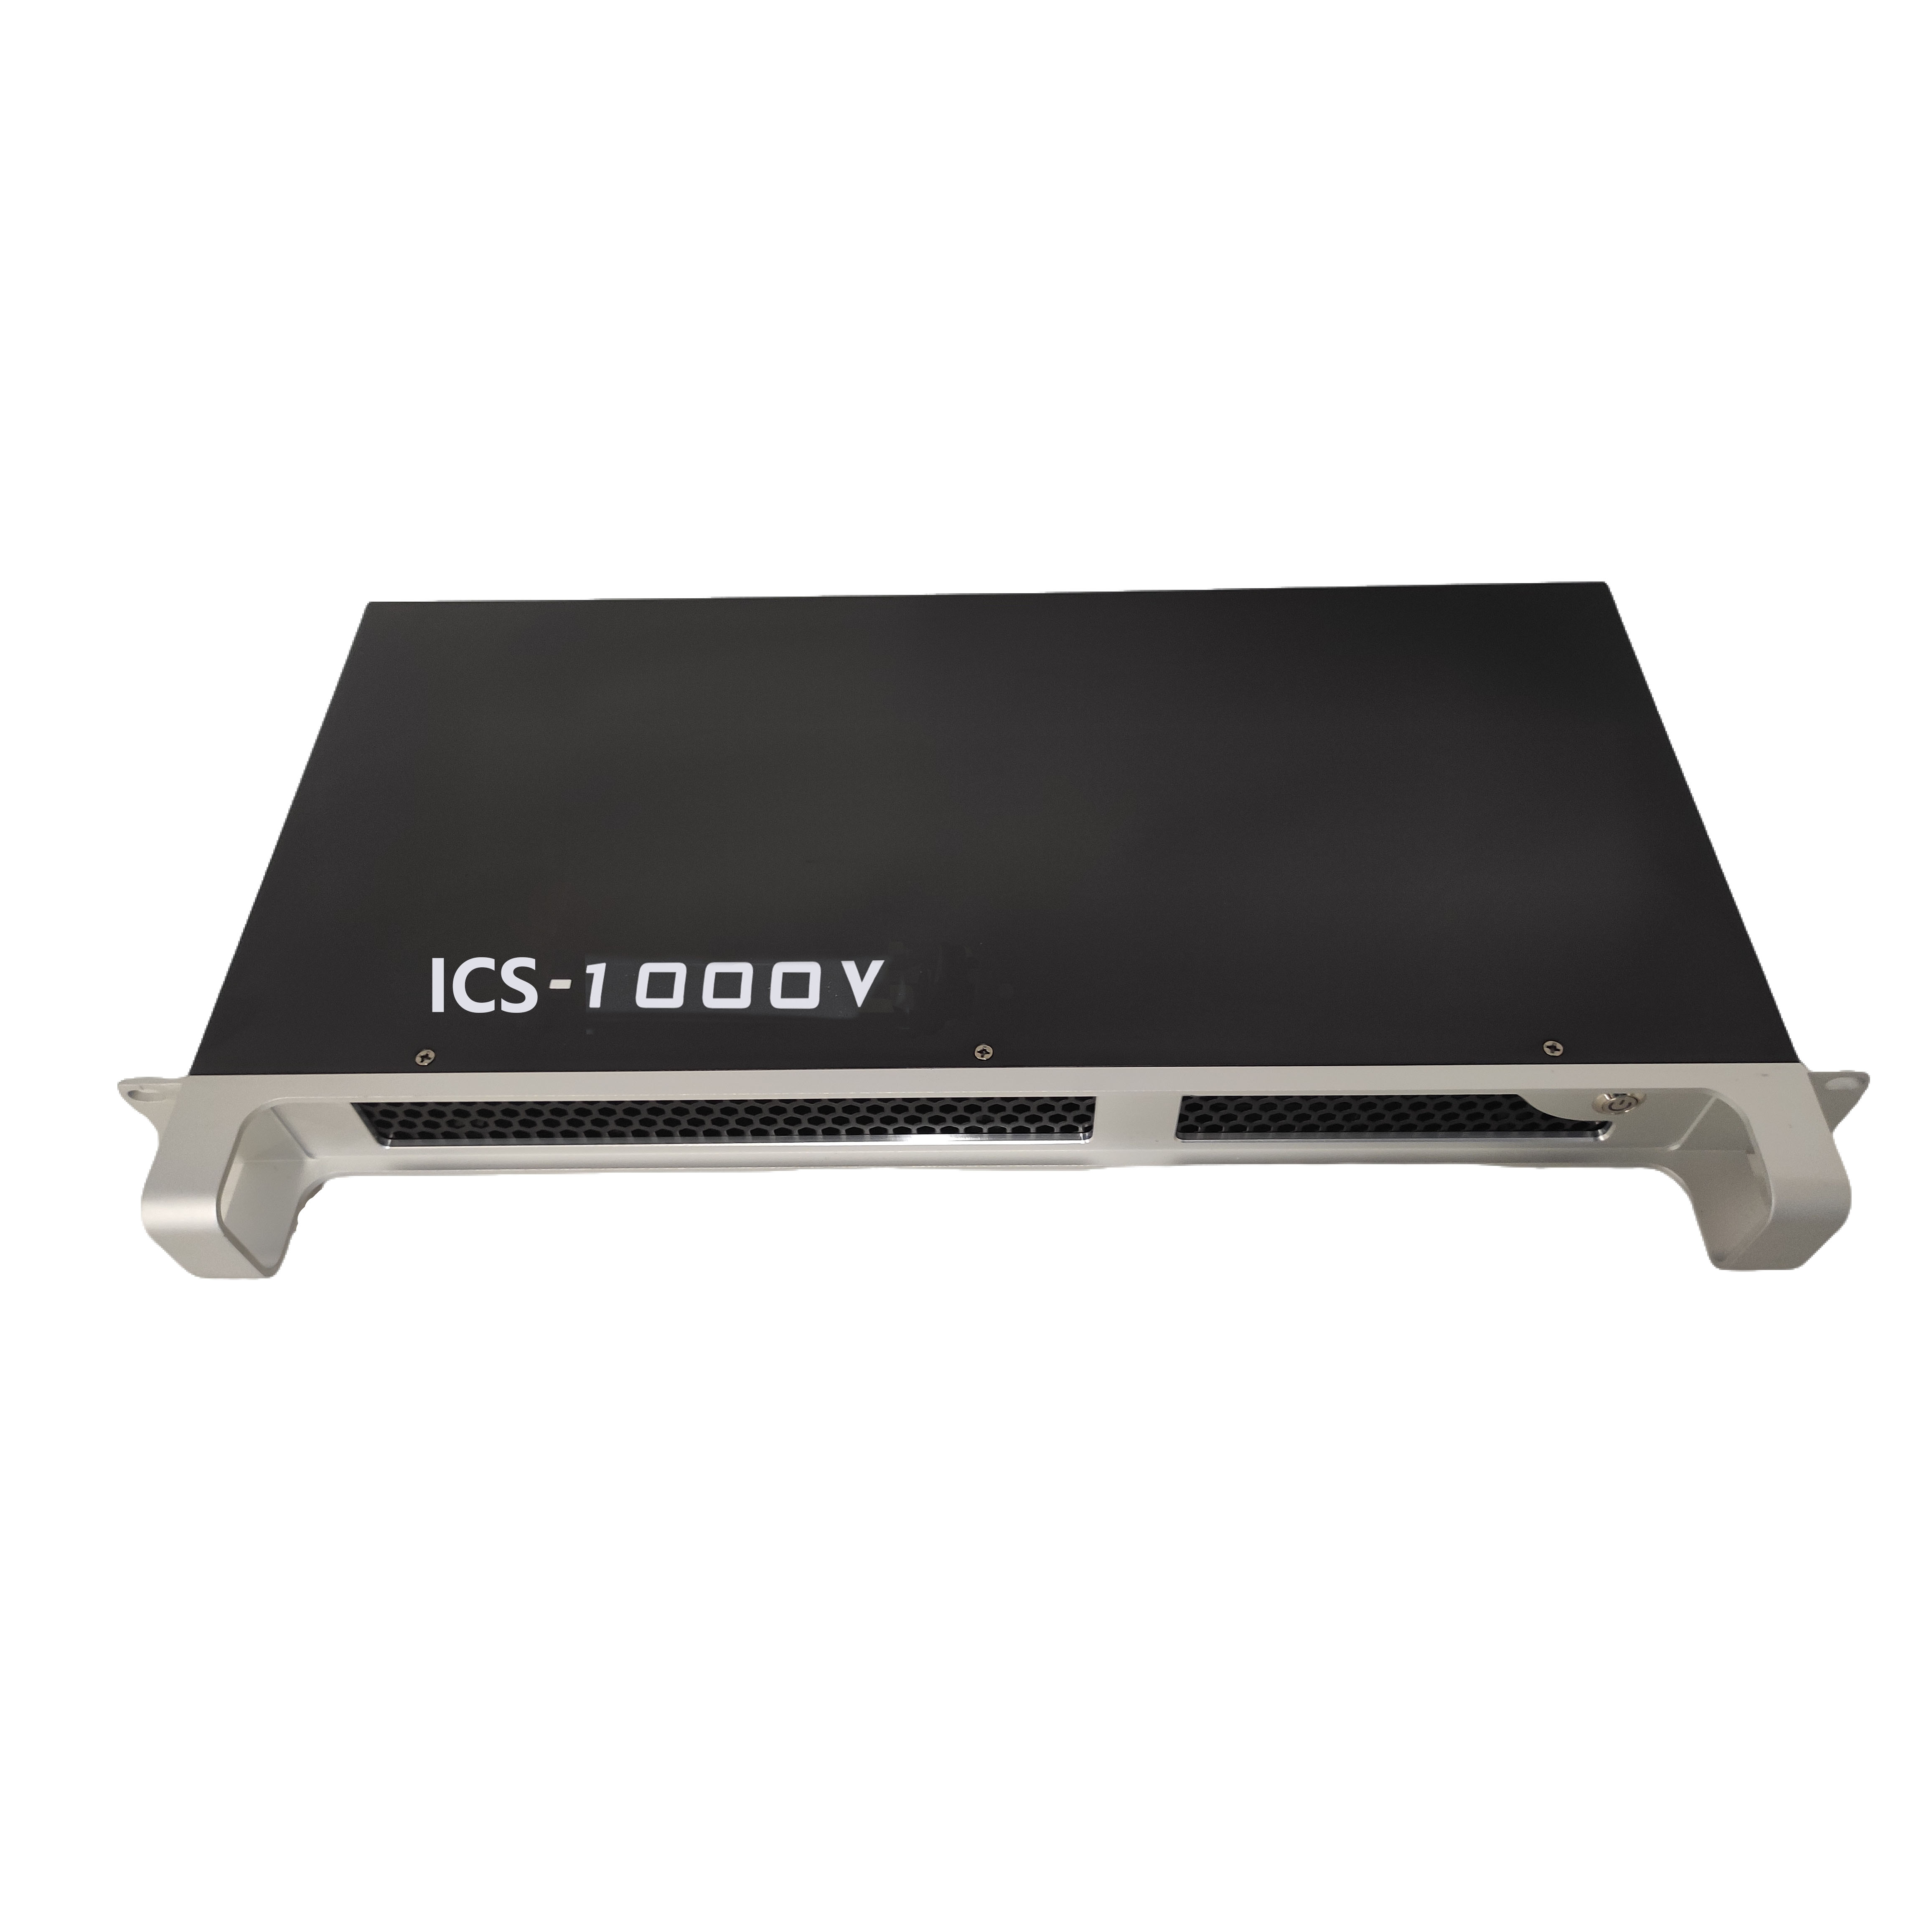 明静智控系统 ICS-1000V